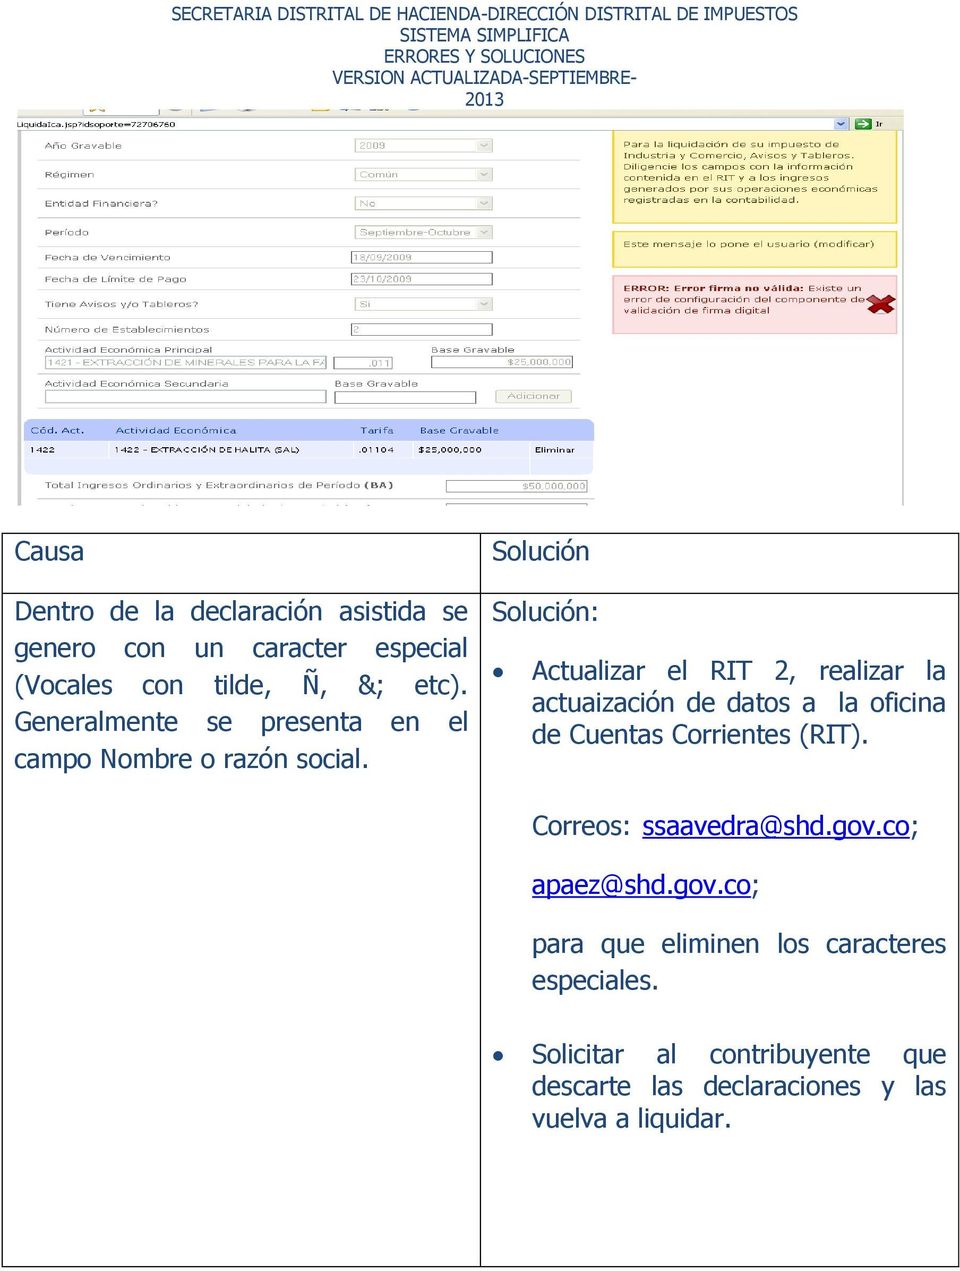 : Actualizar el RIT 2, realizar la actuaización de datos a la oficina de Cuentas Corrientes (RIT).